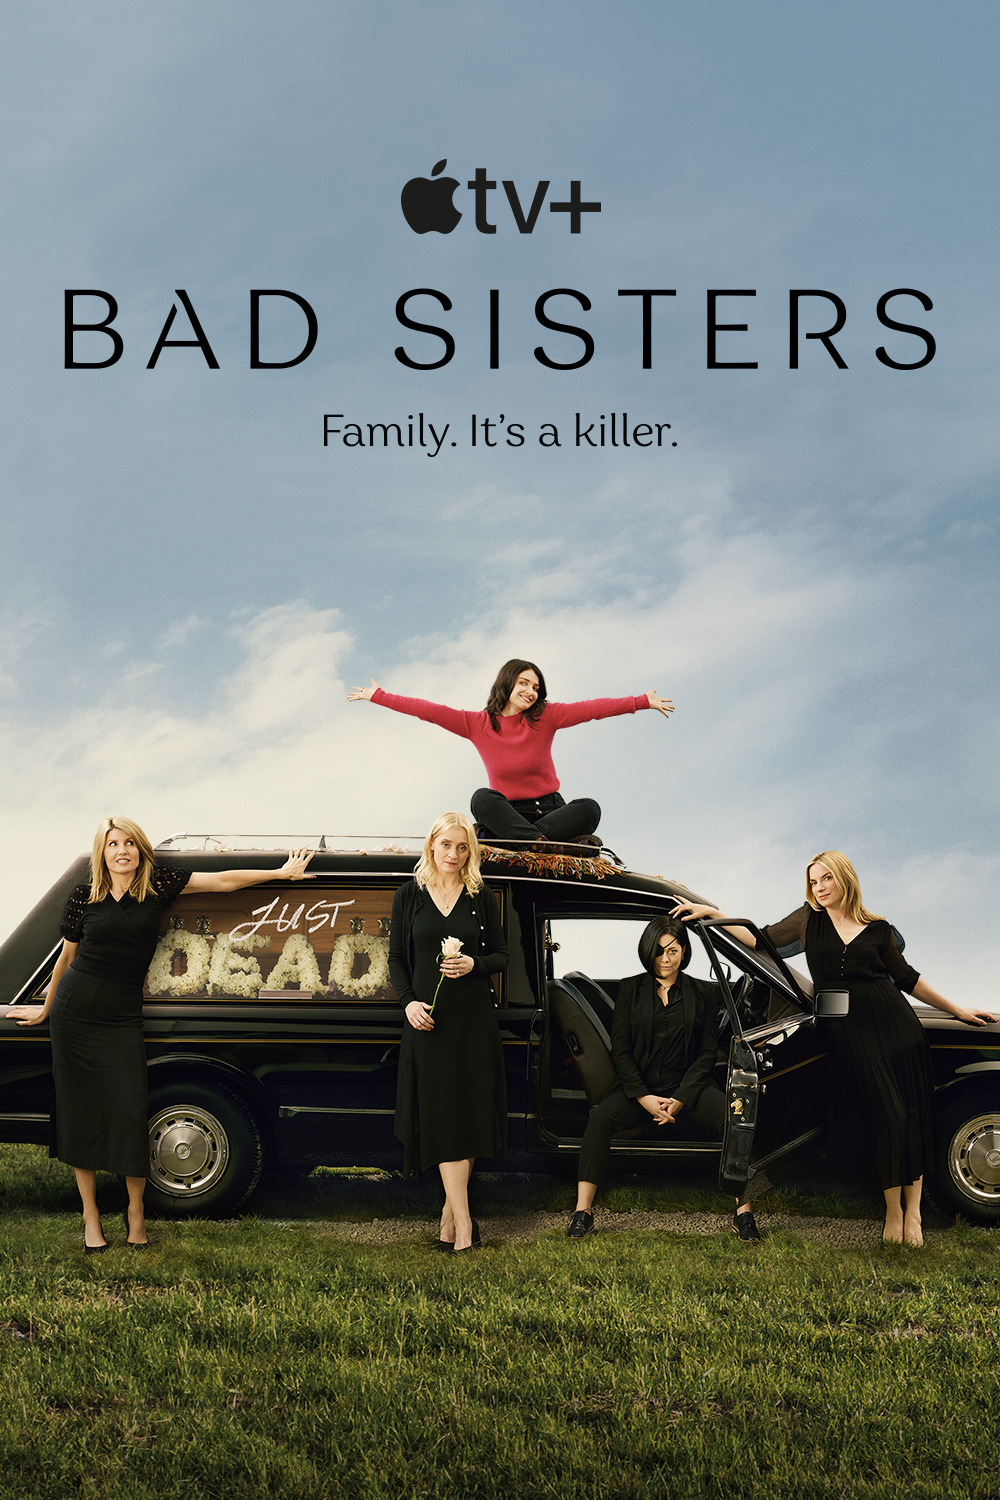 Bad Sisters Season 1 Episode 8